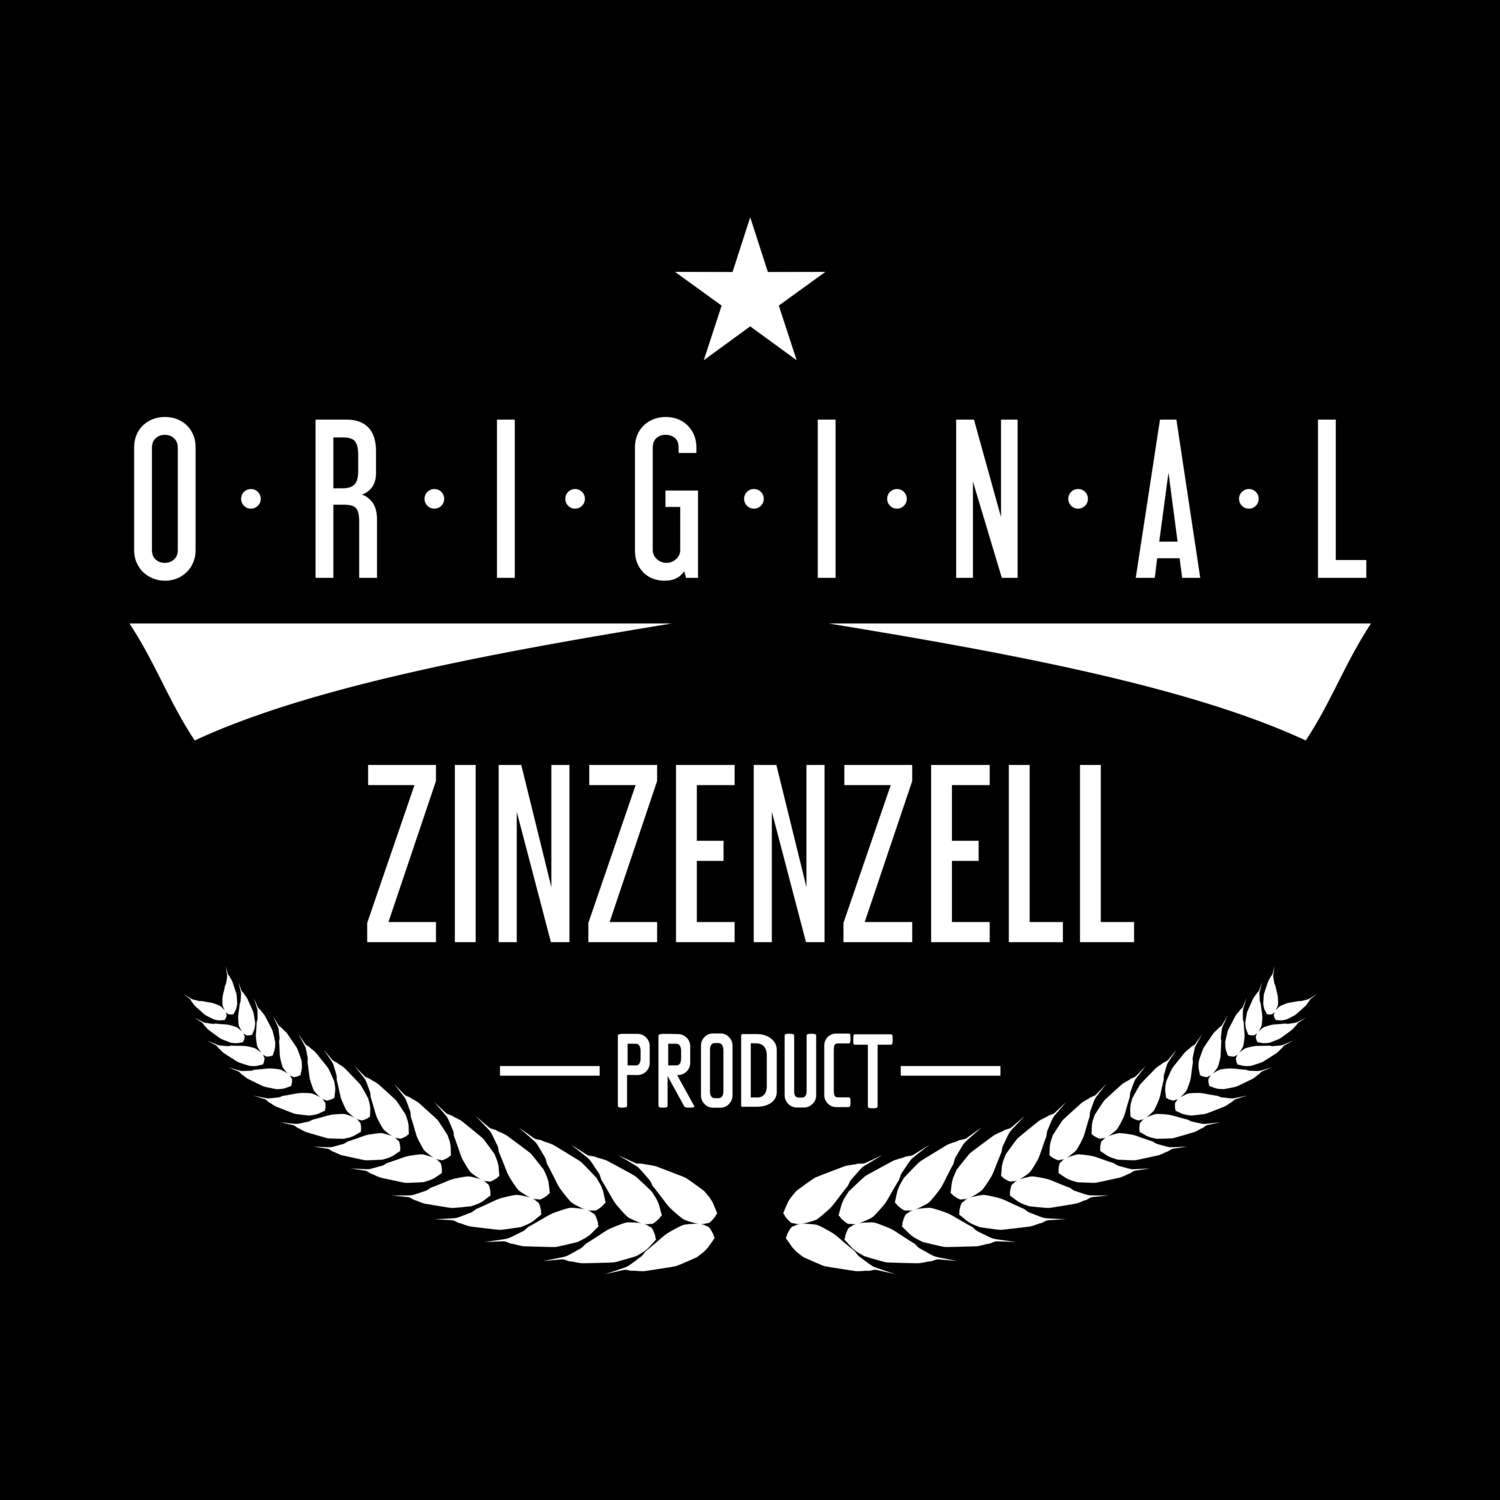 Zinzenzell T-Shirt »Original Product«